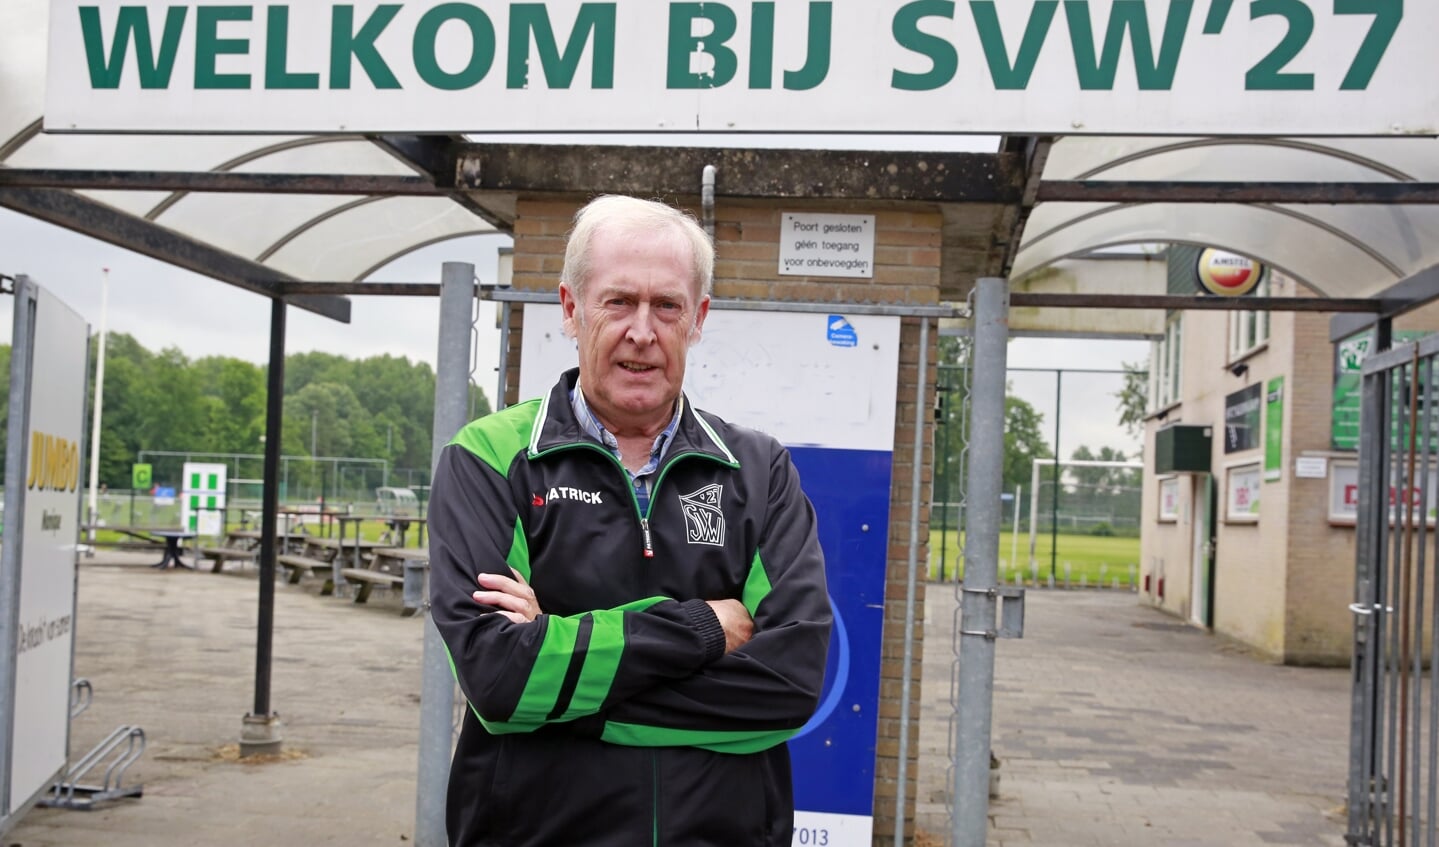 Gerard van Diepen: ruim een halve eeuw trouw vrijwilliger bij SVW '27.